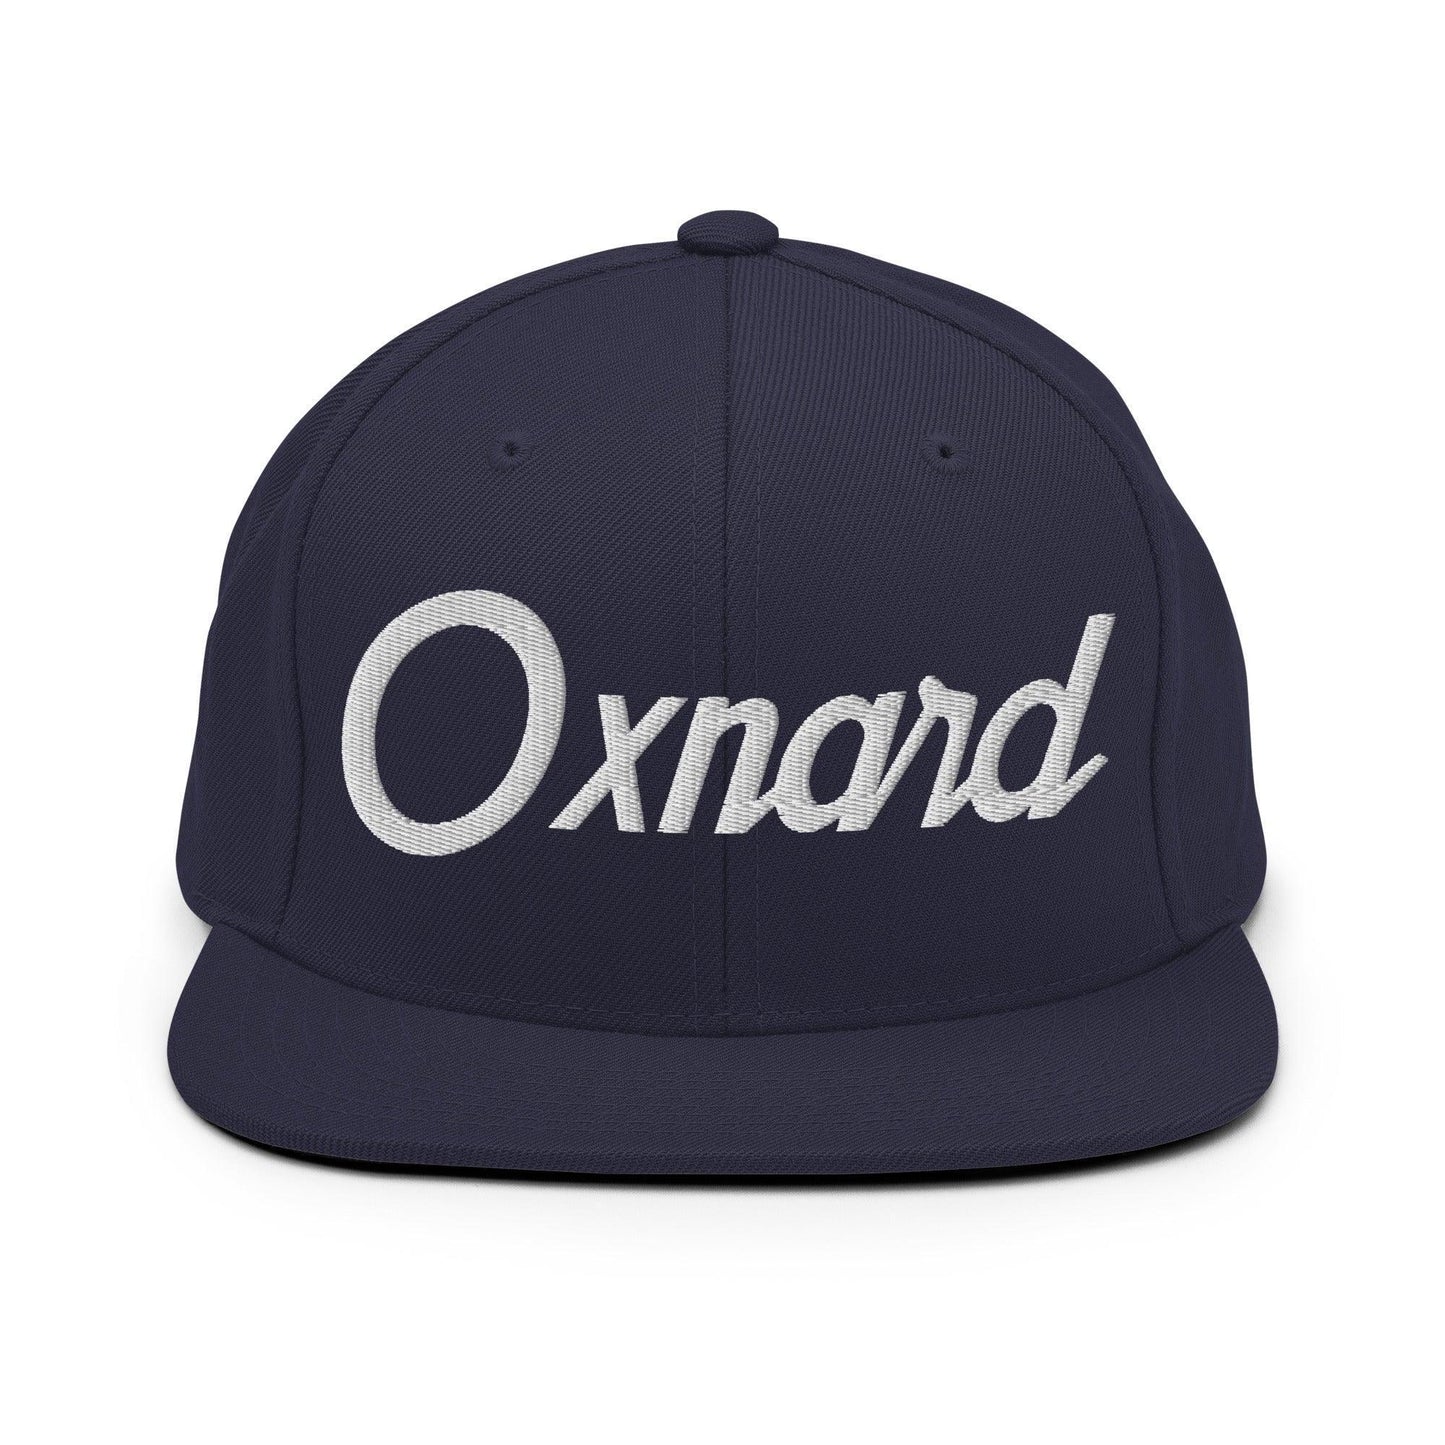 Oxnard Script Snapback Hat Navy